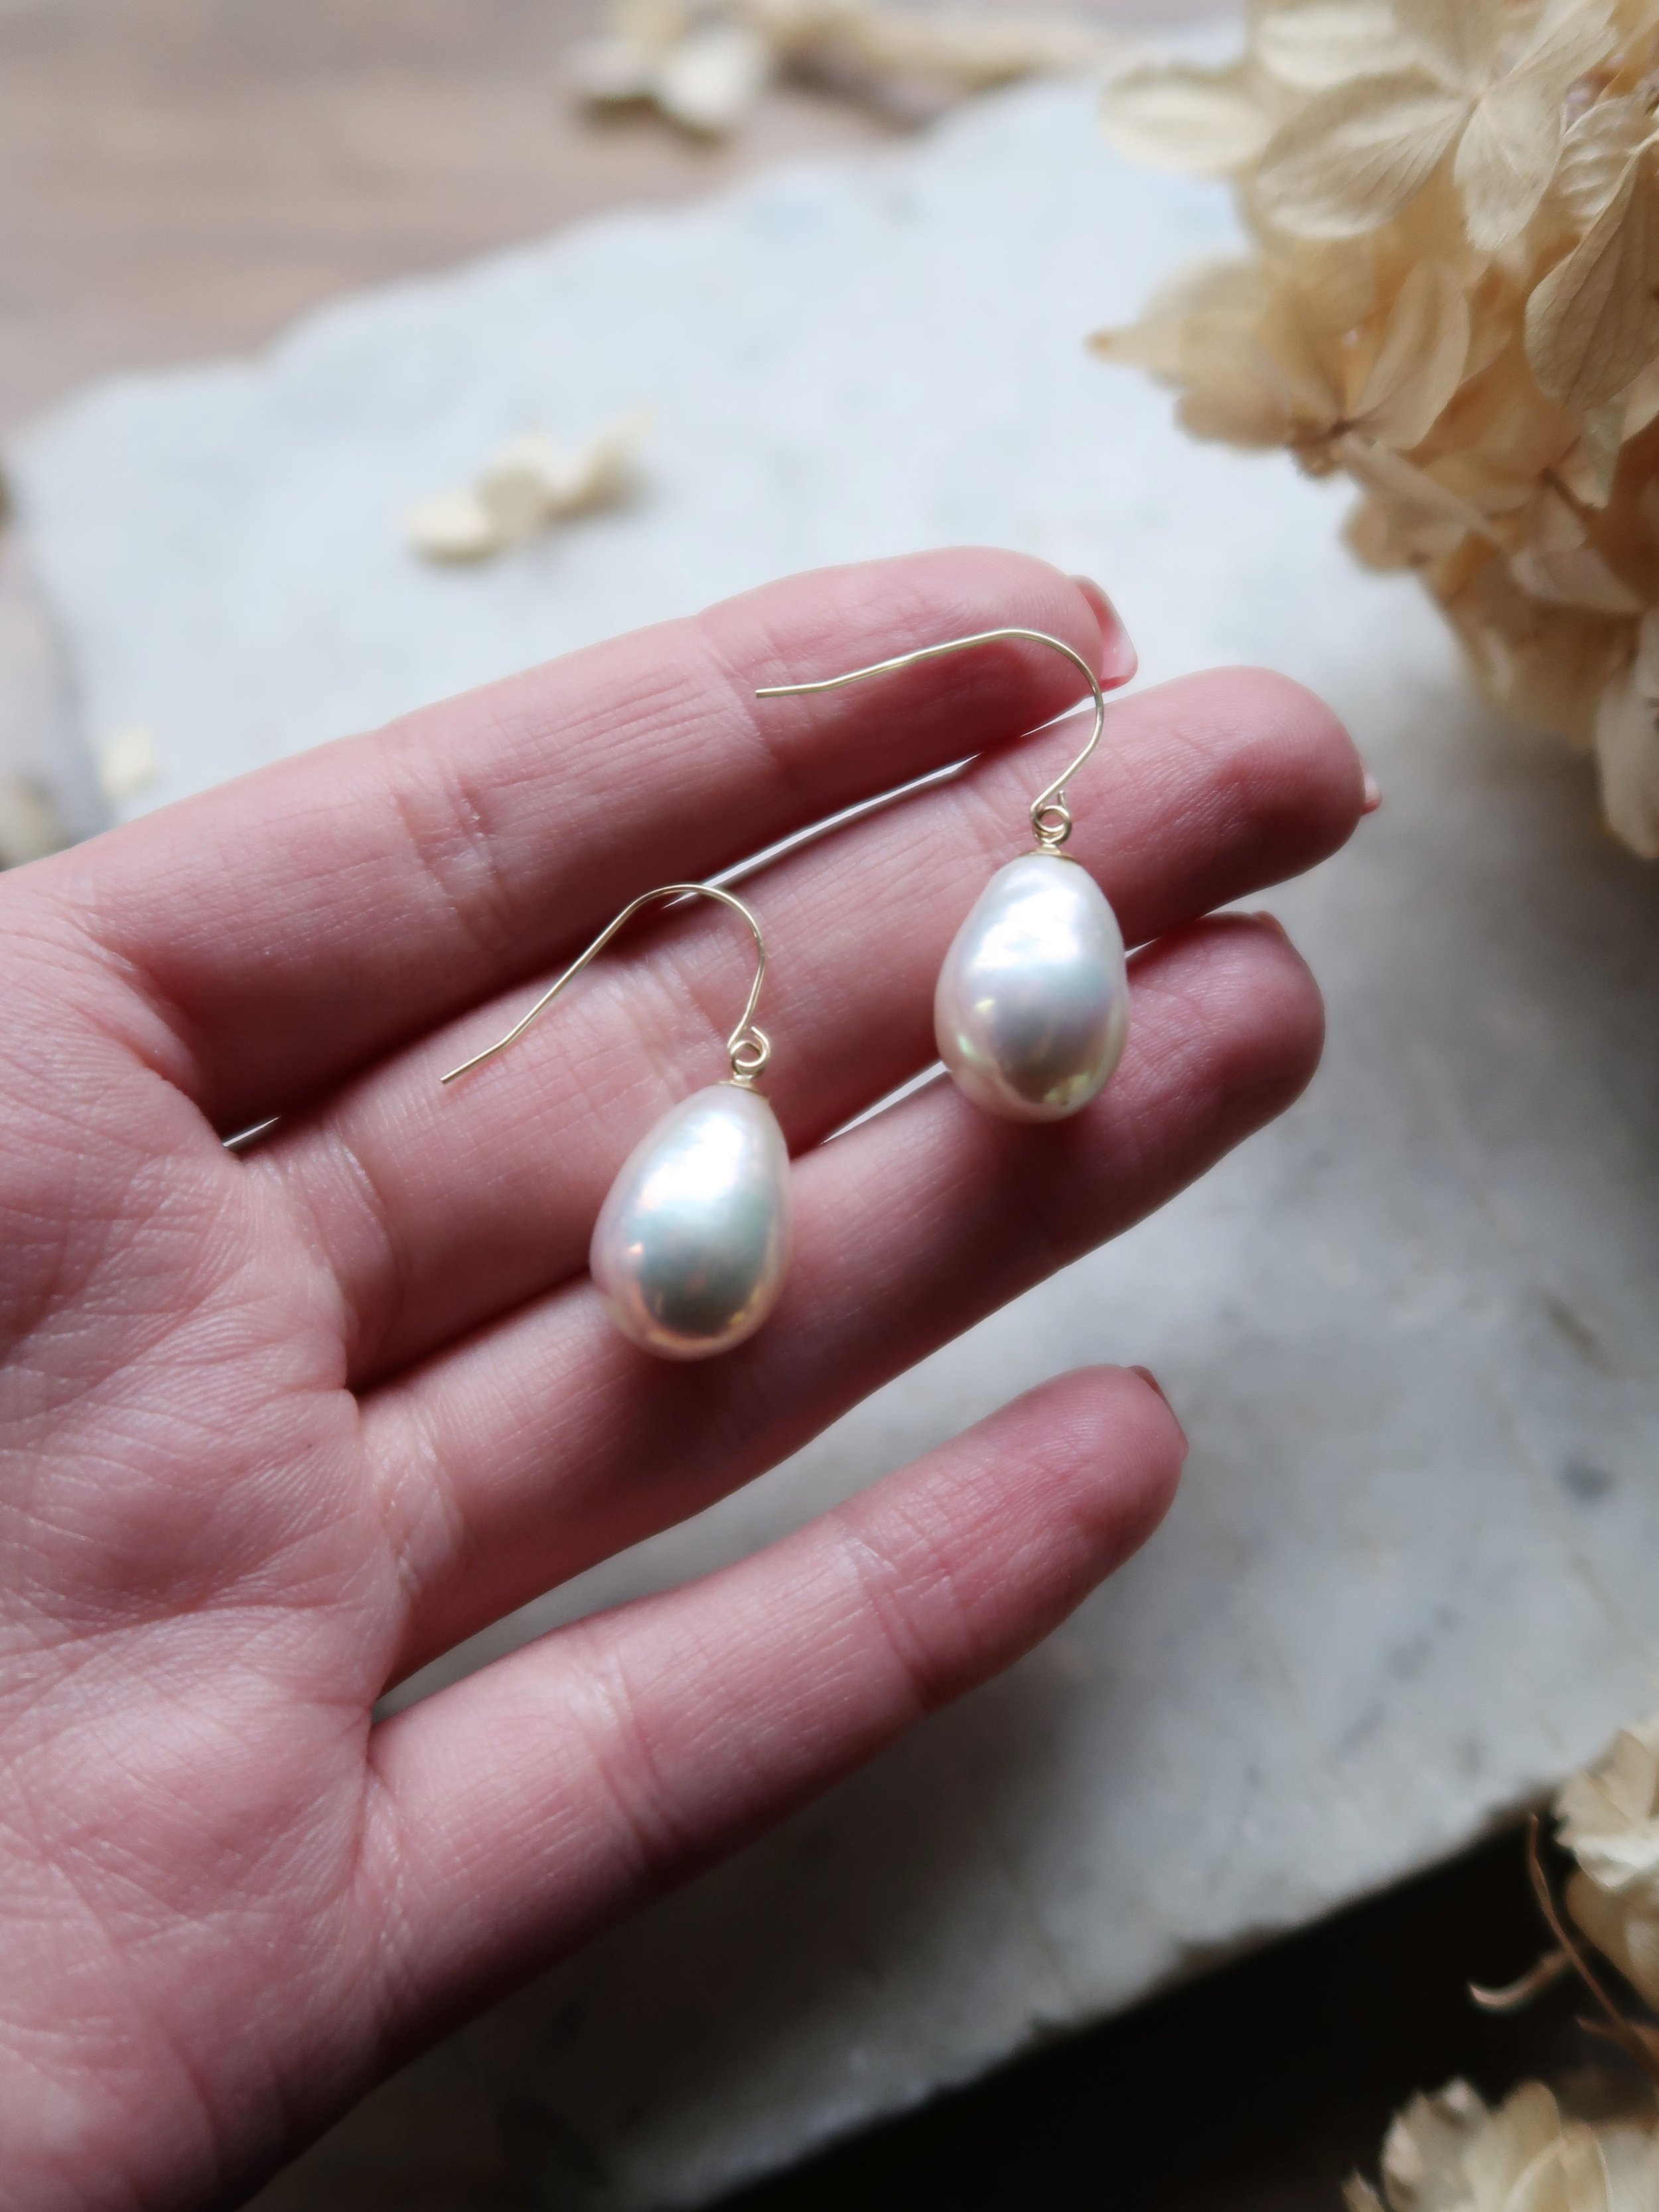 Buy single strand Baroque pearl necklace online – Gehna Shop